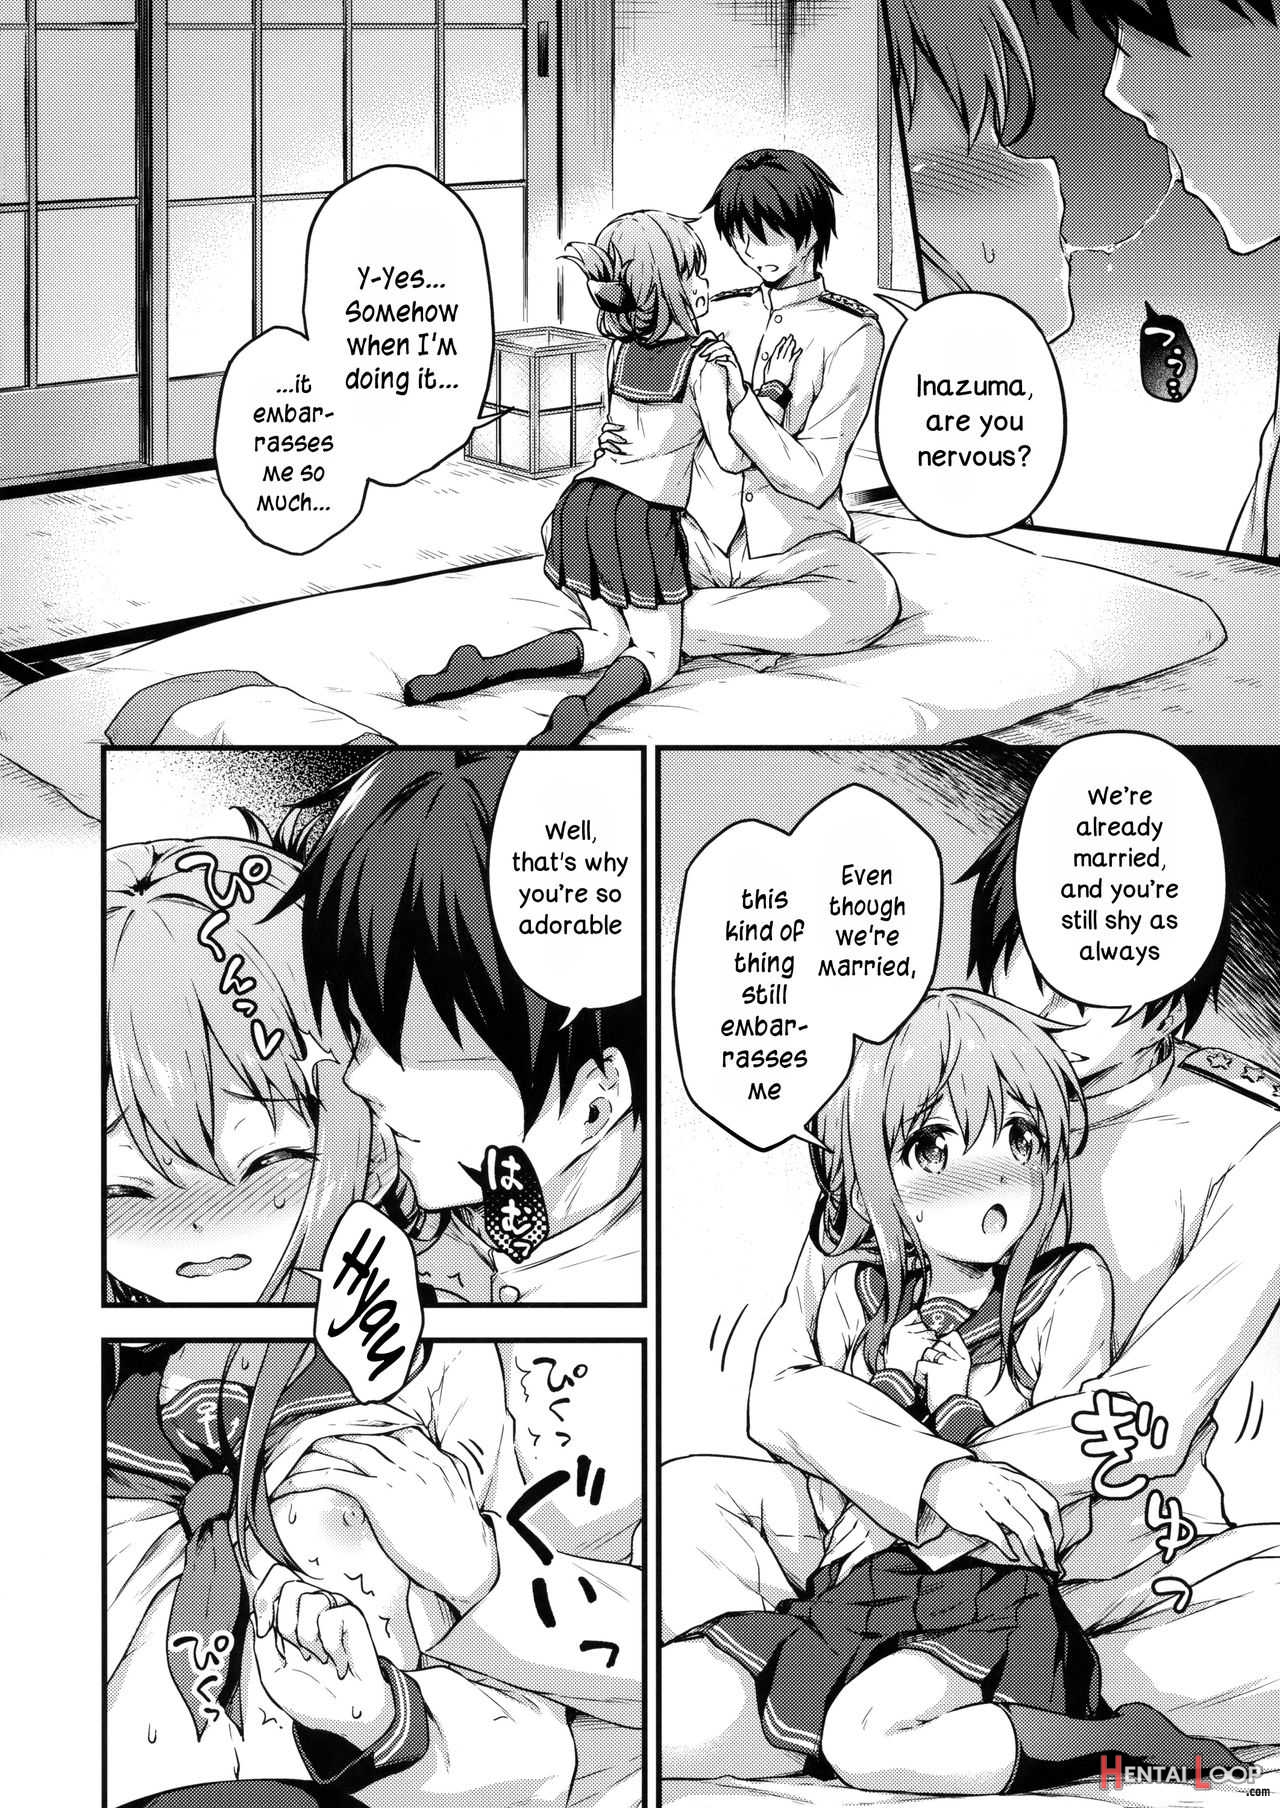 Inazuma To Kekkon Shoya Kakkokari page 7